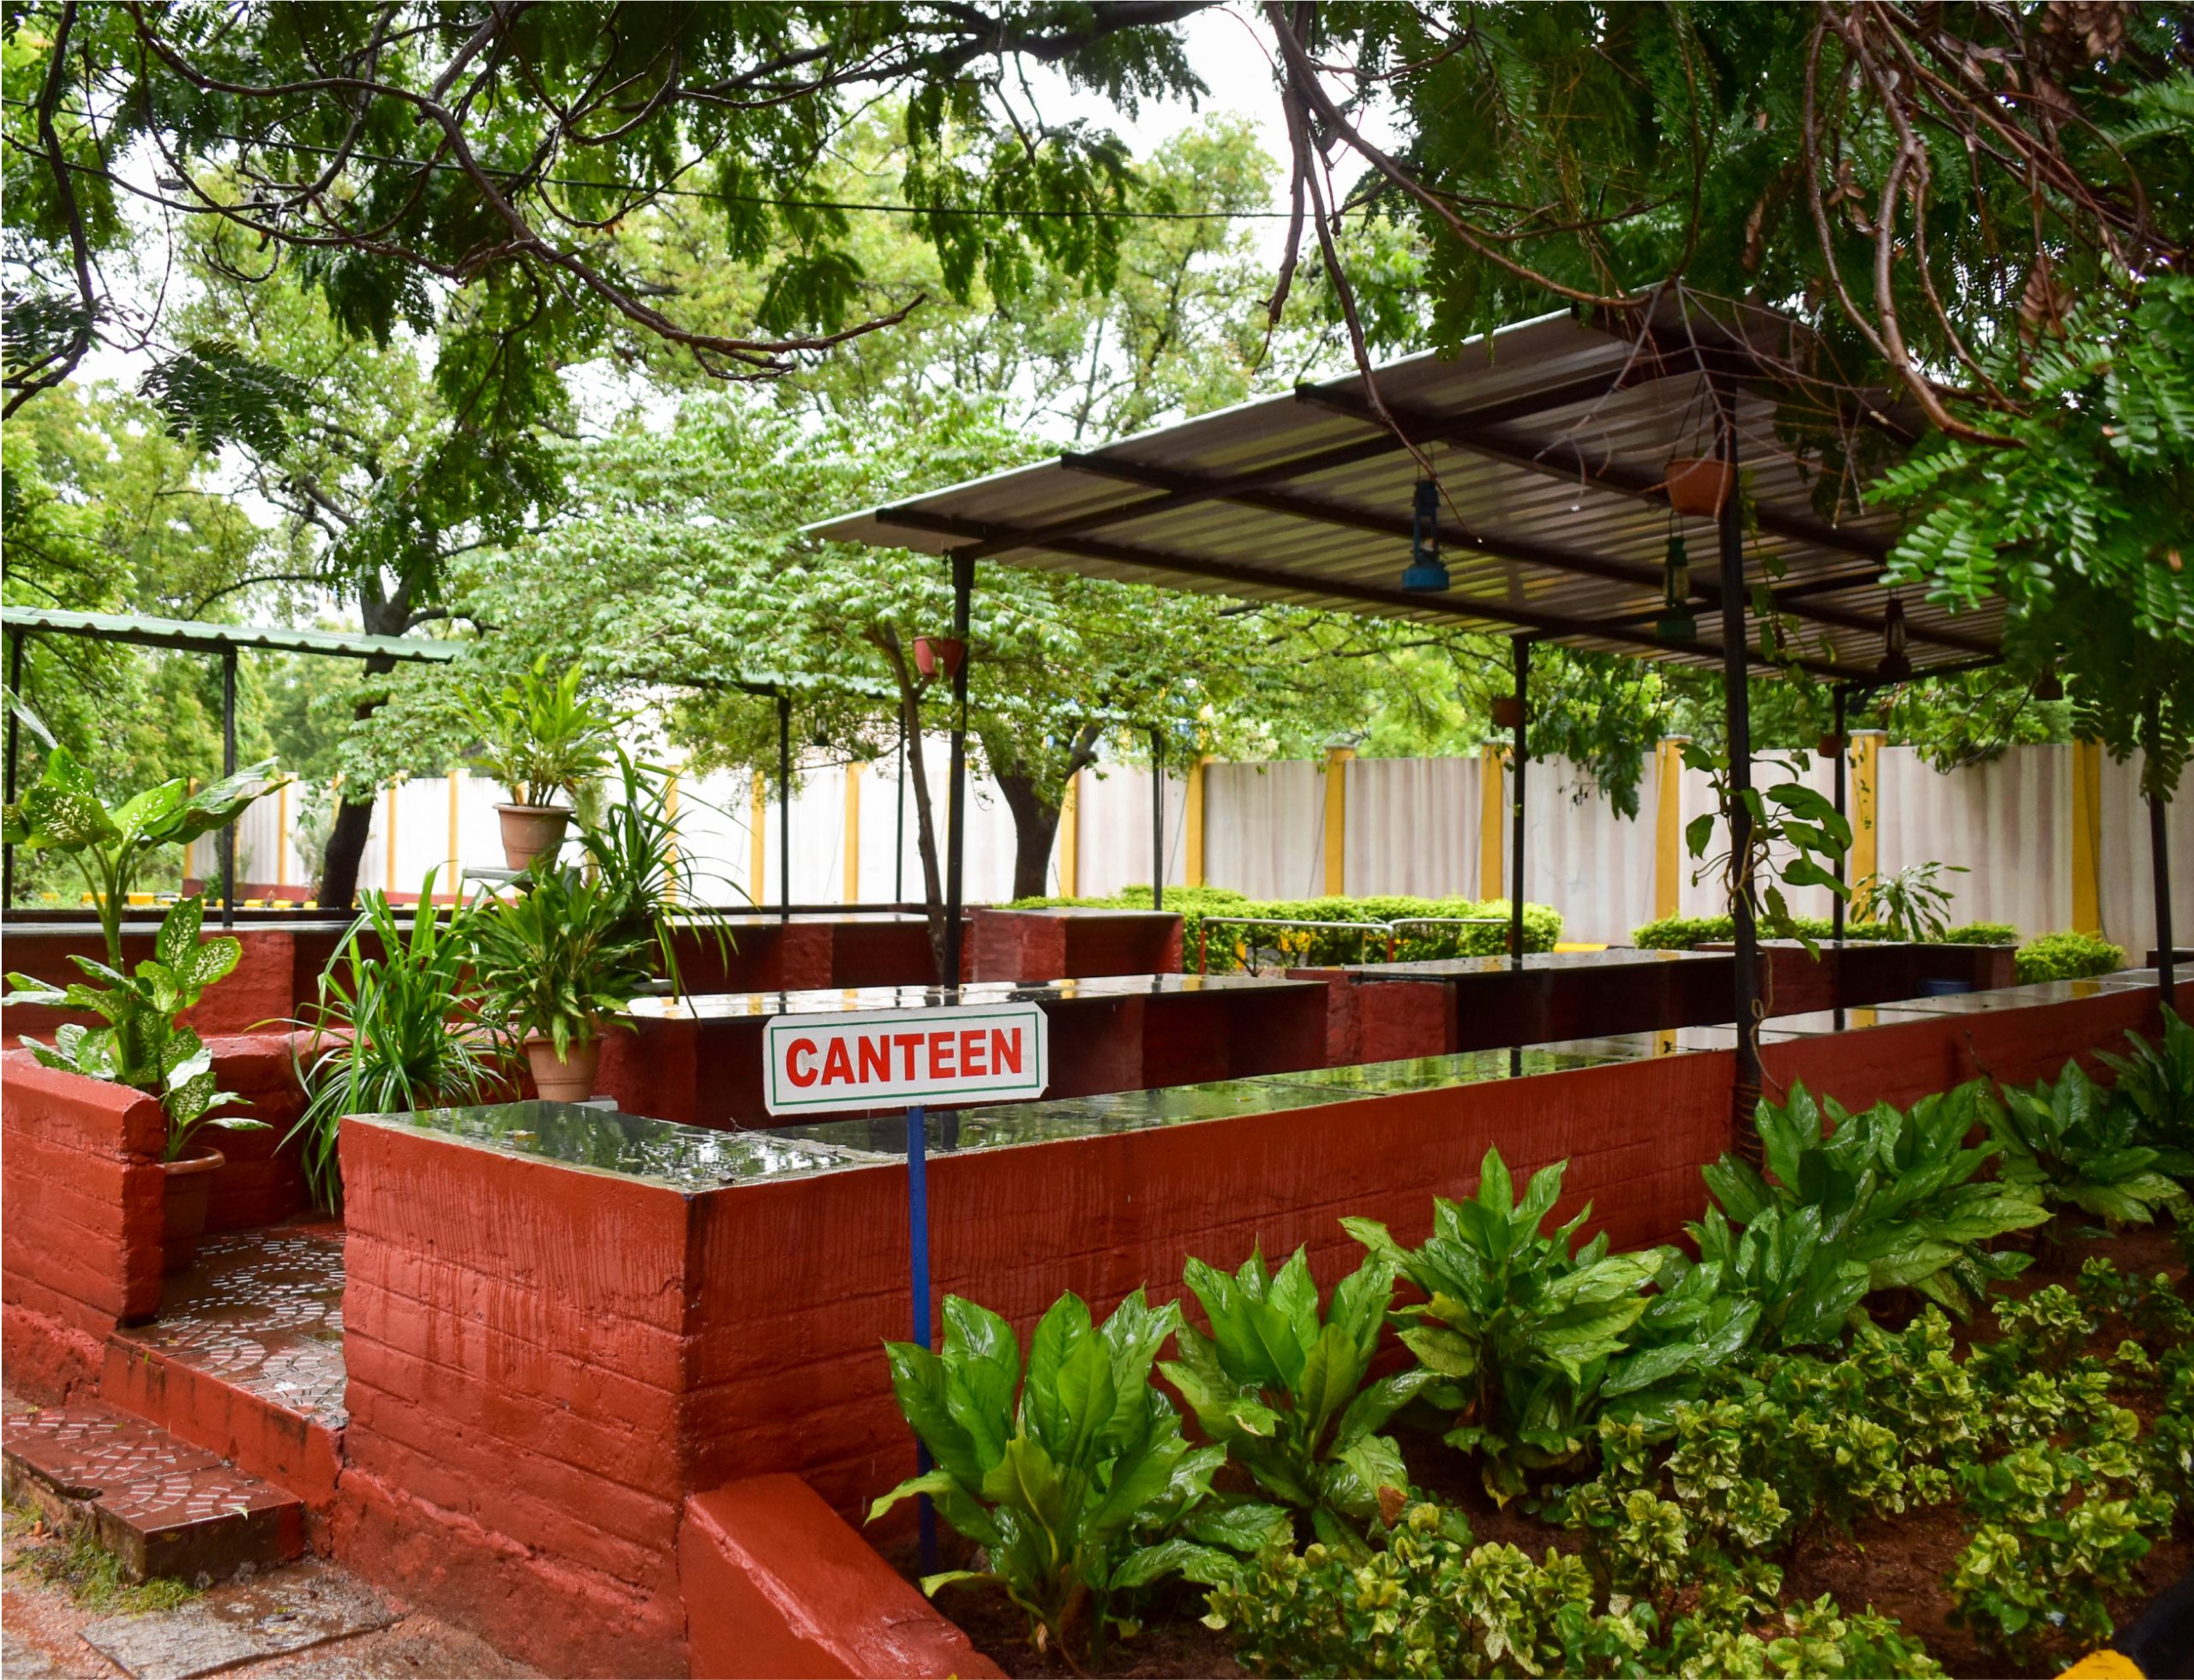 Canteen (1)